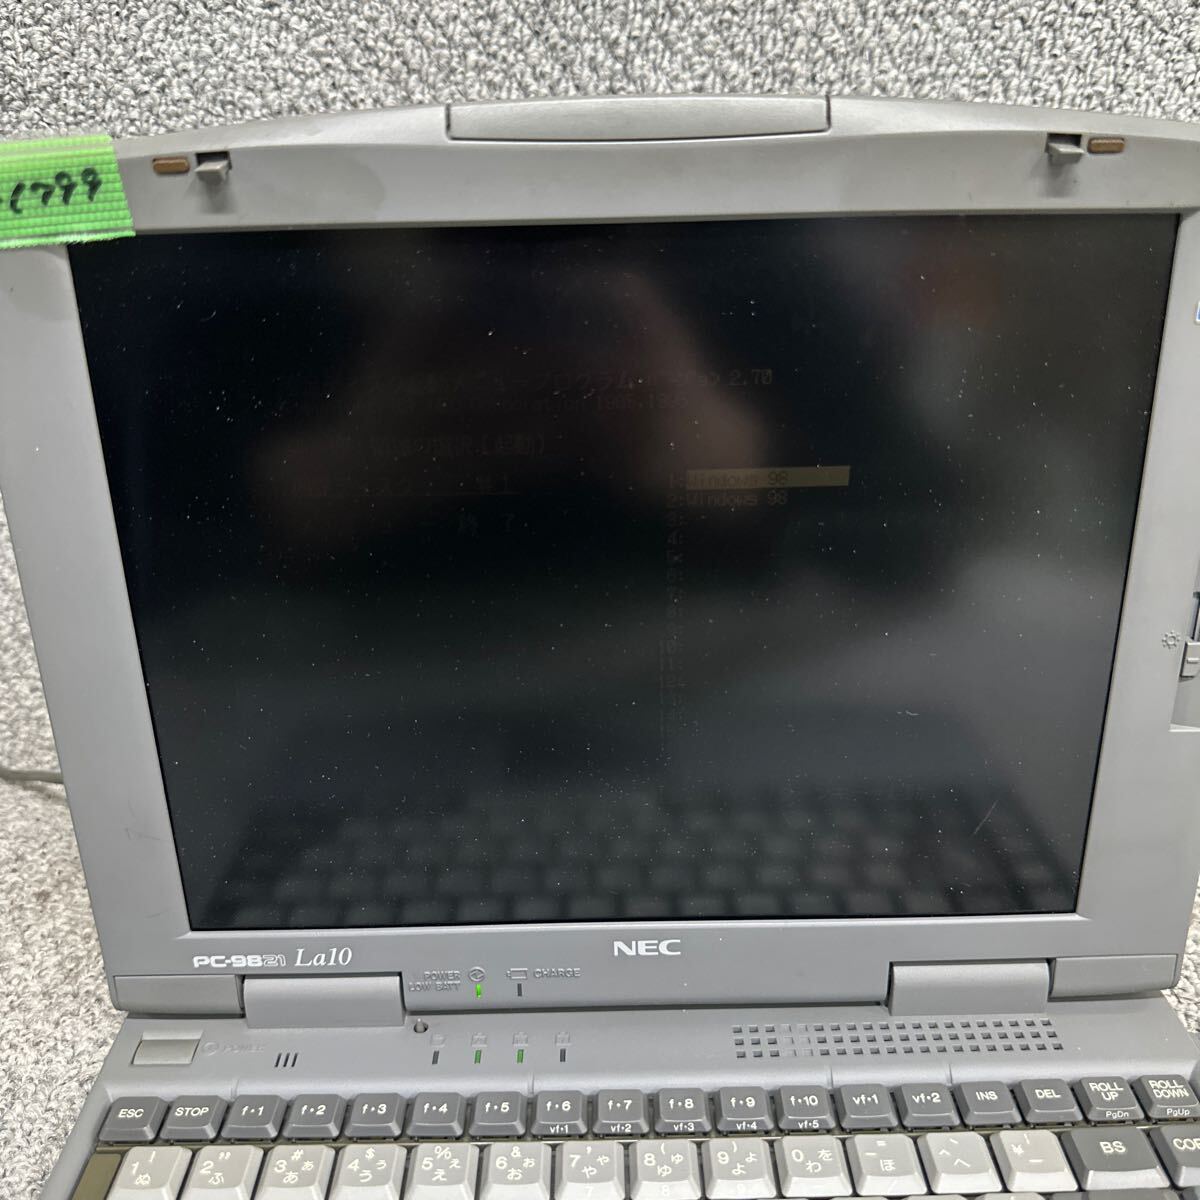 PCN98-1799 супер-скидка PC98 ноутбук NEC 98note Aile PC-9821La10/S8 modelD пуск подтверждено Junk включение в покупку возможность 